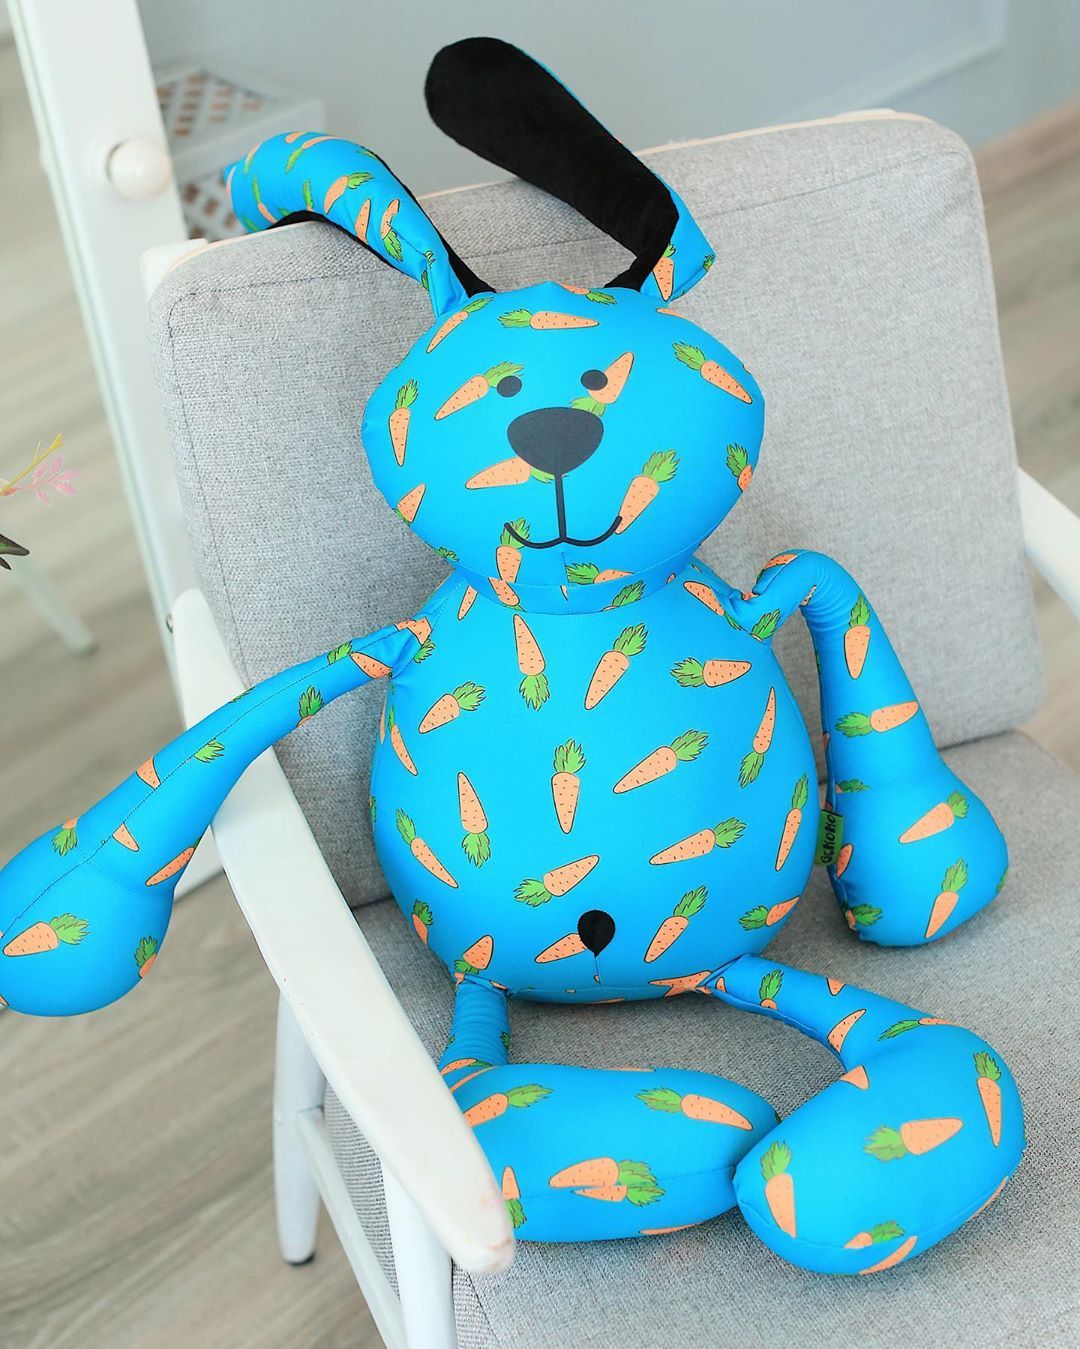 Подушка-игрушка - купить подушки игрушку по выгодной цене в Киеве - Интернет-магазин Raiduga